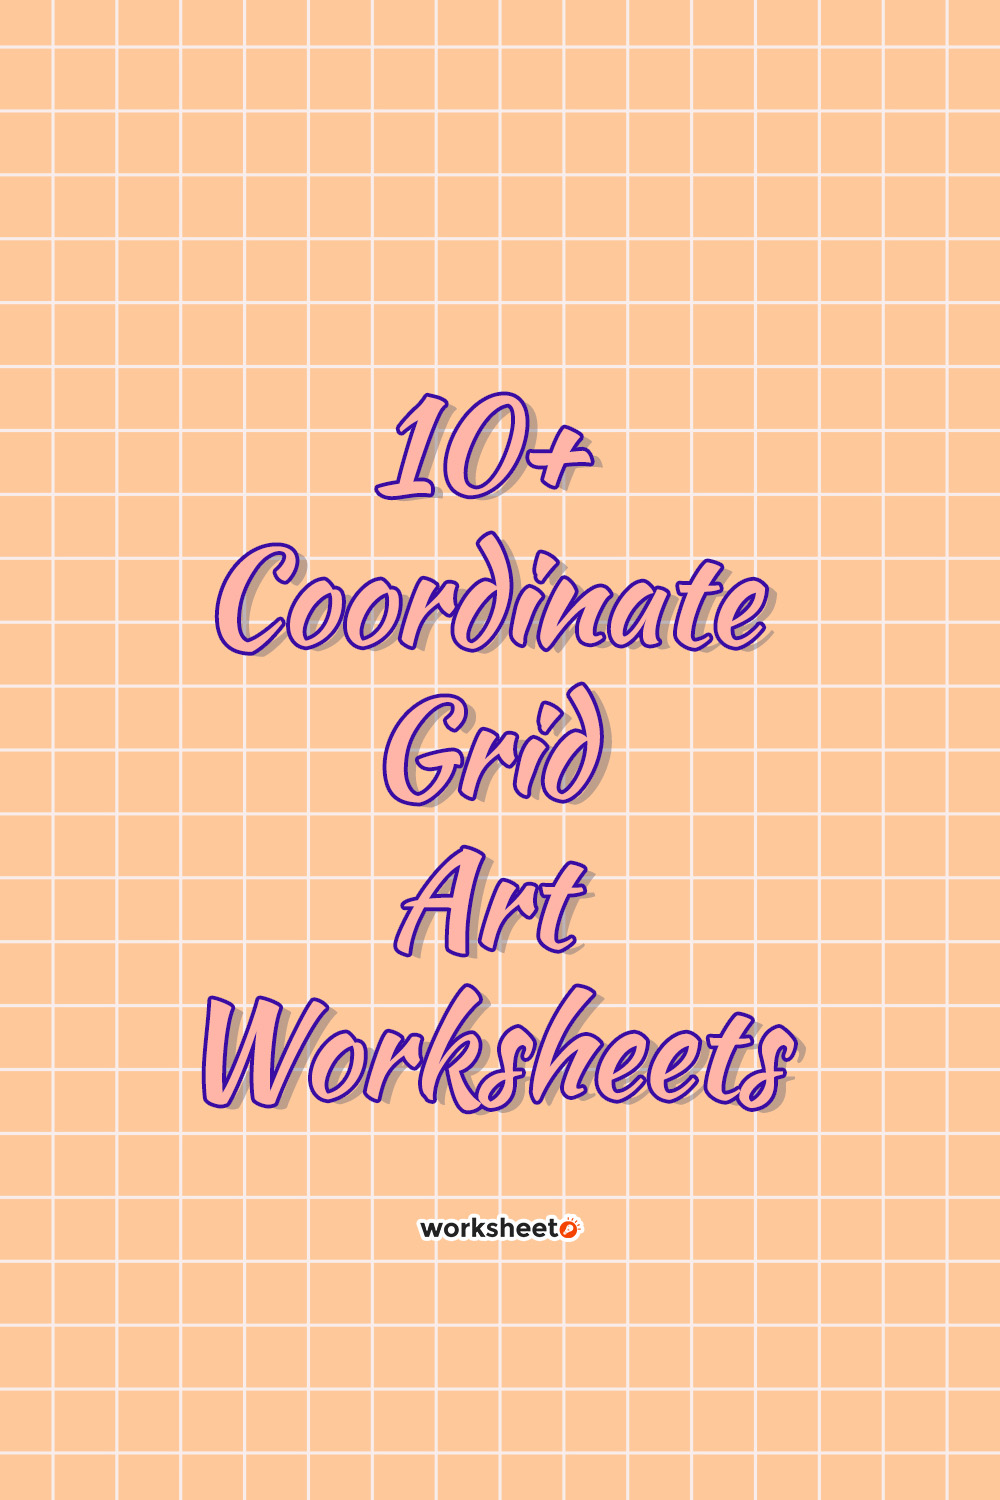 14 Images of Coordinate Grid Art Worksheets